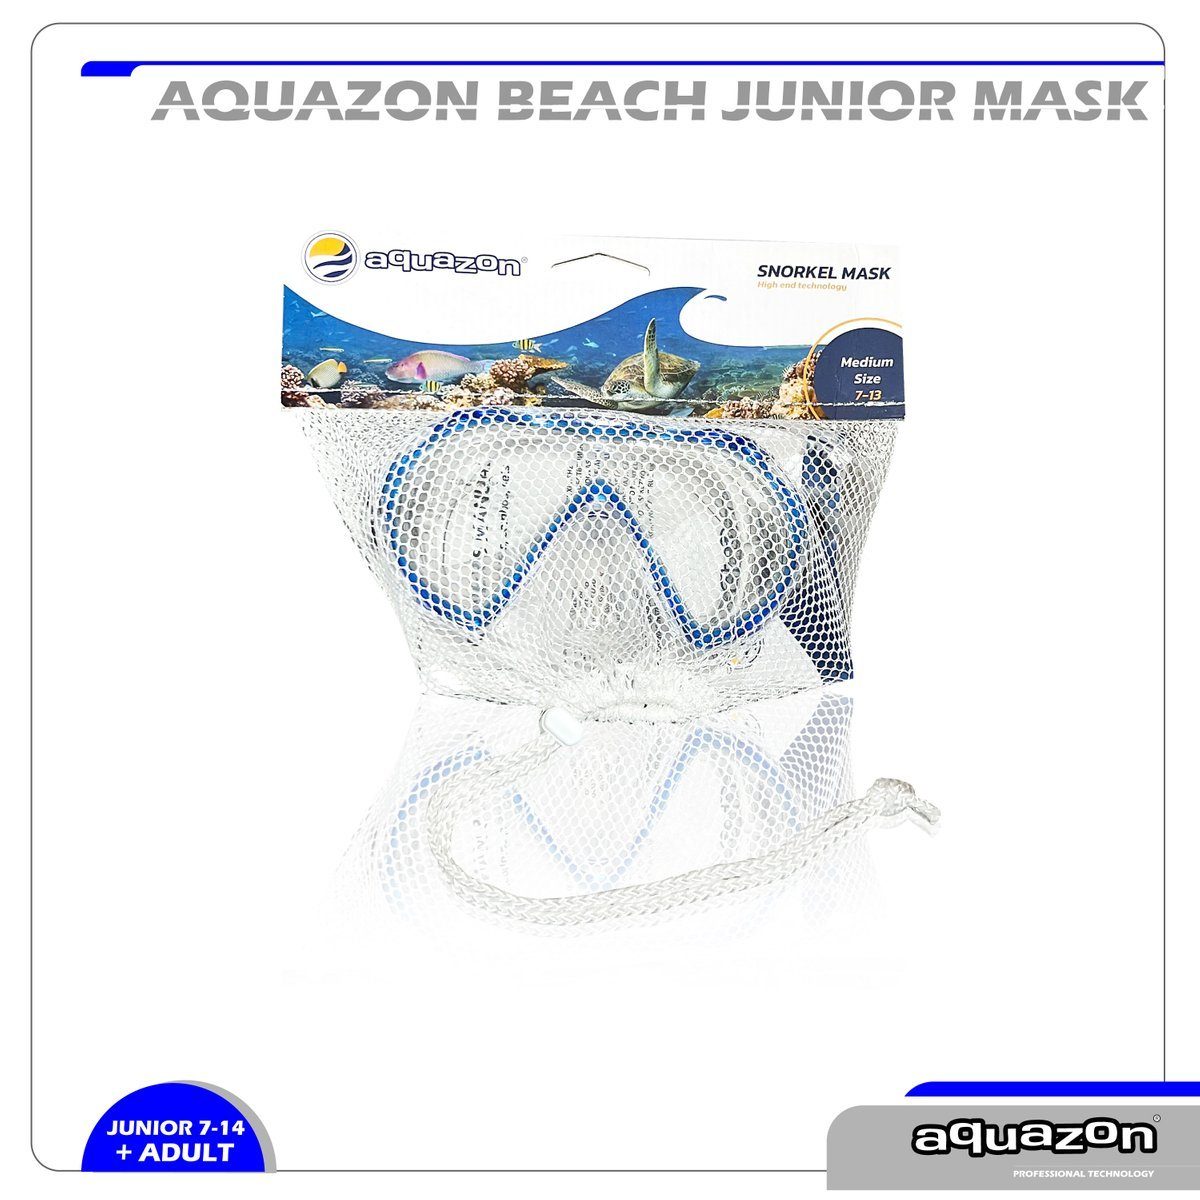 Kinder Jahre, 7-12 Silikon für BEACH, Junior Schnorchelbrille Taucherbrille AQUAZON blau